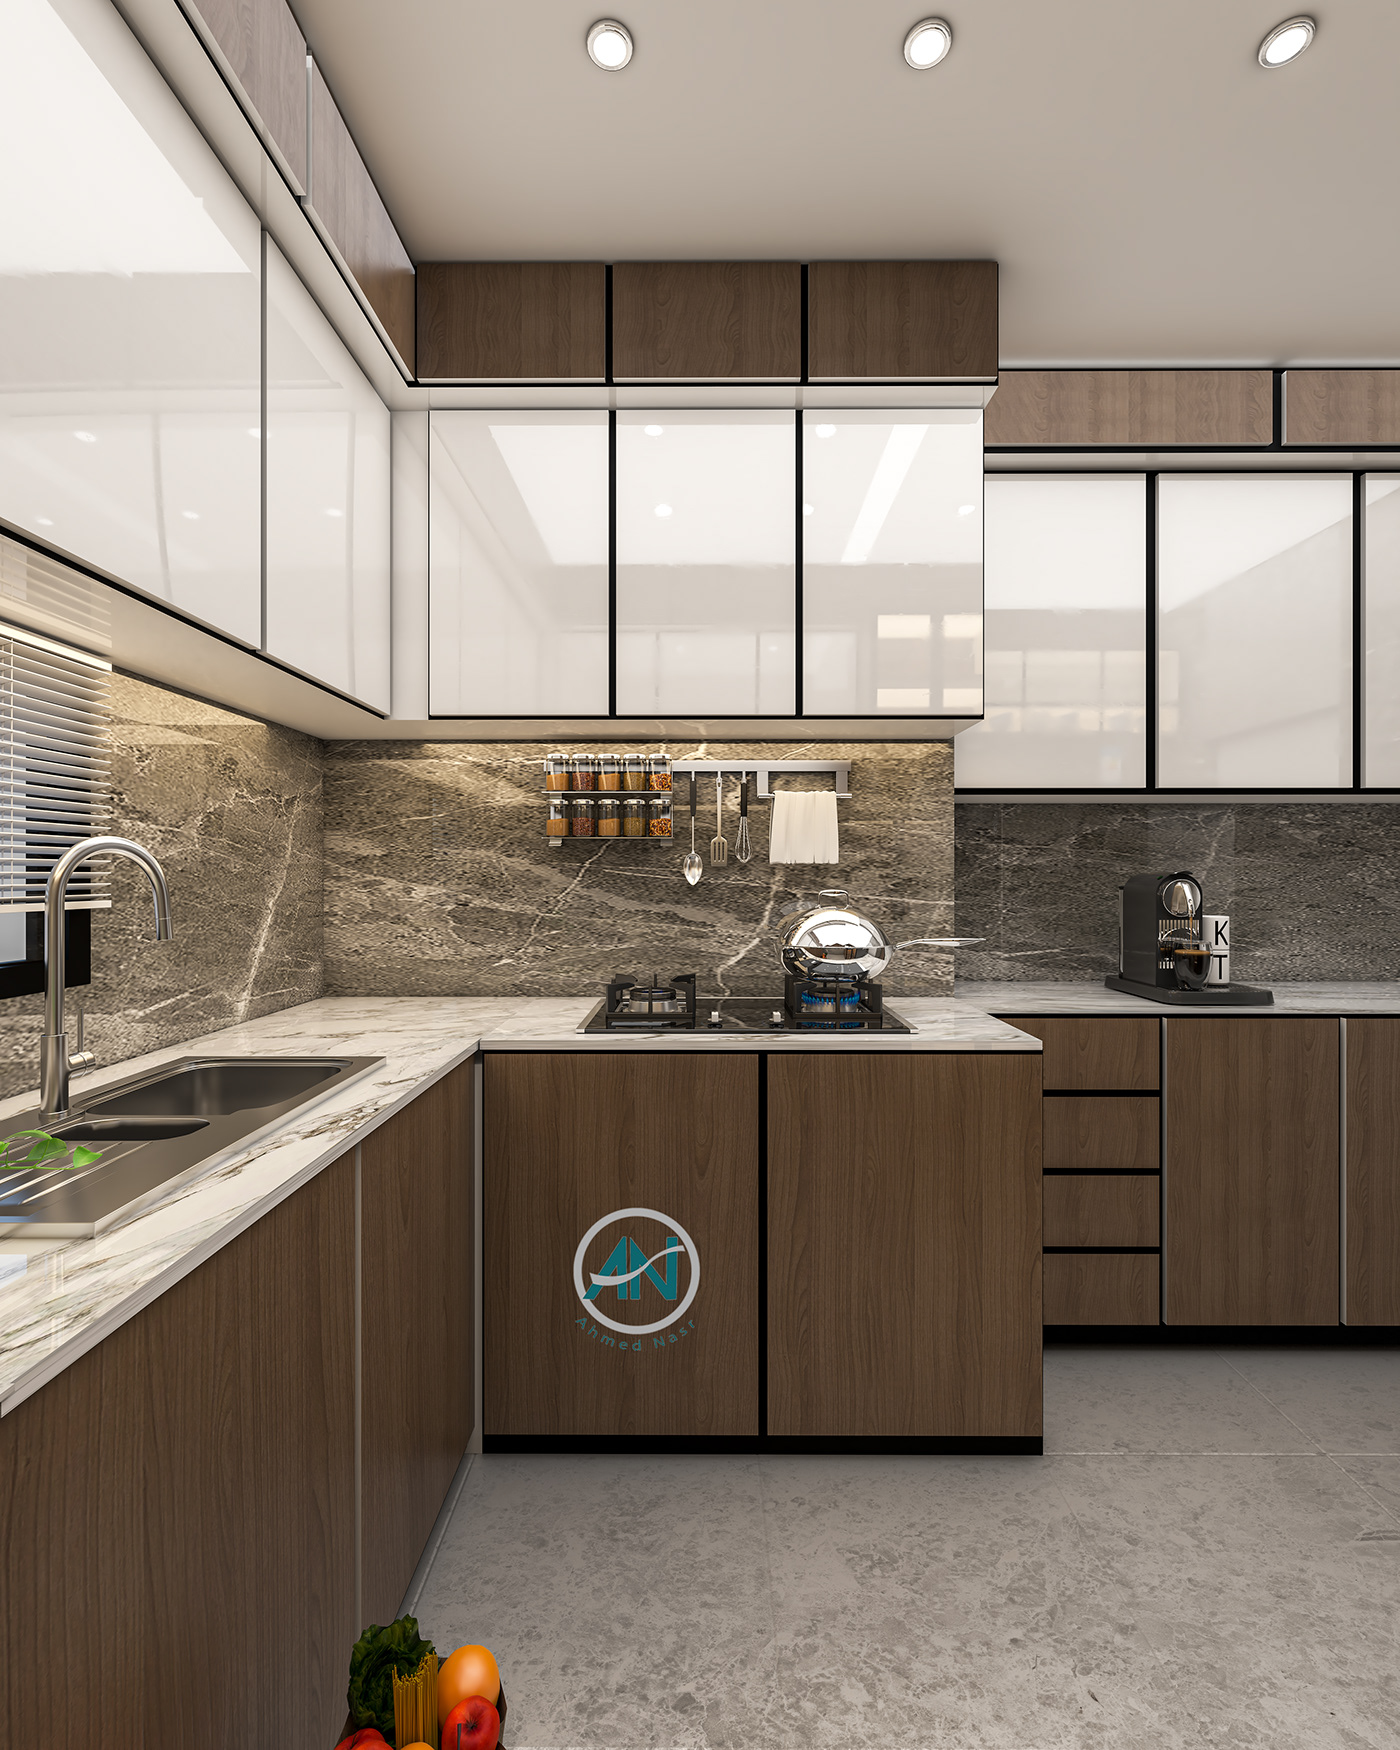 kitchen kitchendesign interiordesign architecture рендер interior design  modern art Drawing  sketch